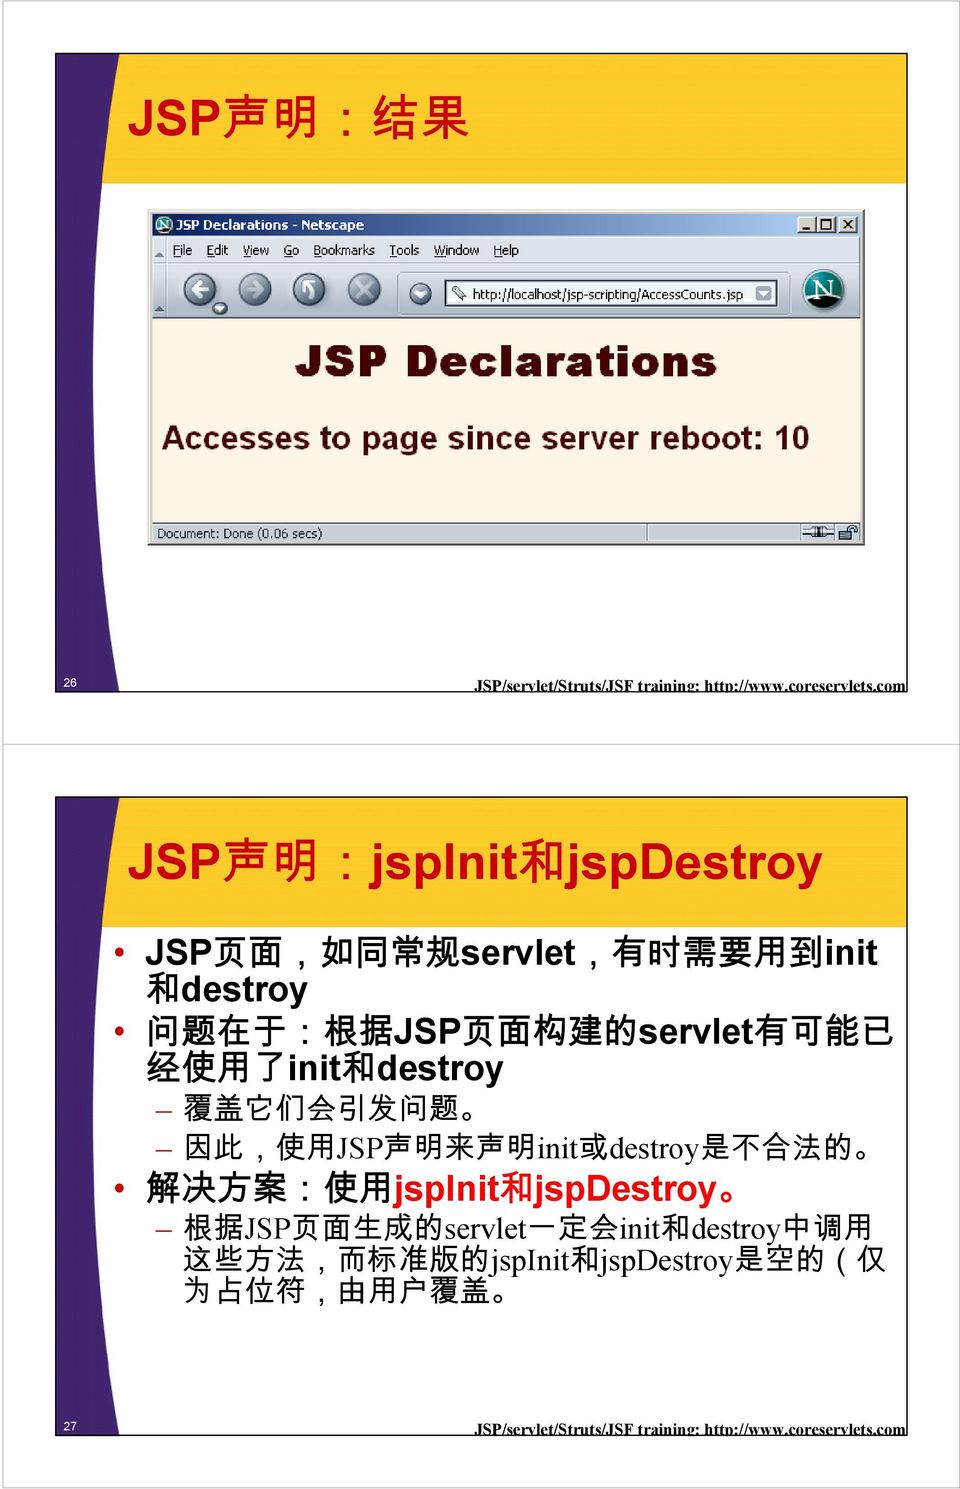 已 经 使 用 了 init 和 destroy 覆 盖 它 们 会 引 发 问 题 因 此, 使 用 JSP 声 明 来 声 明 init 或 destroy 是 不 合 法 的 解 决 方 案 : 使 用 jspinit 和 jspdestroy 根